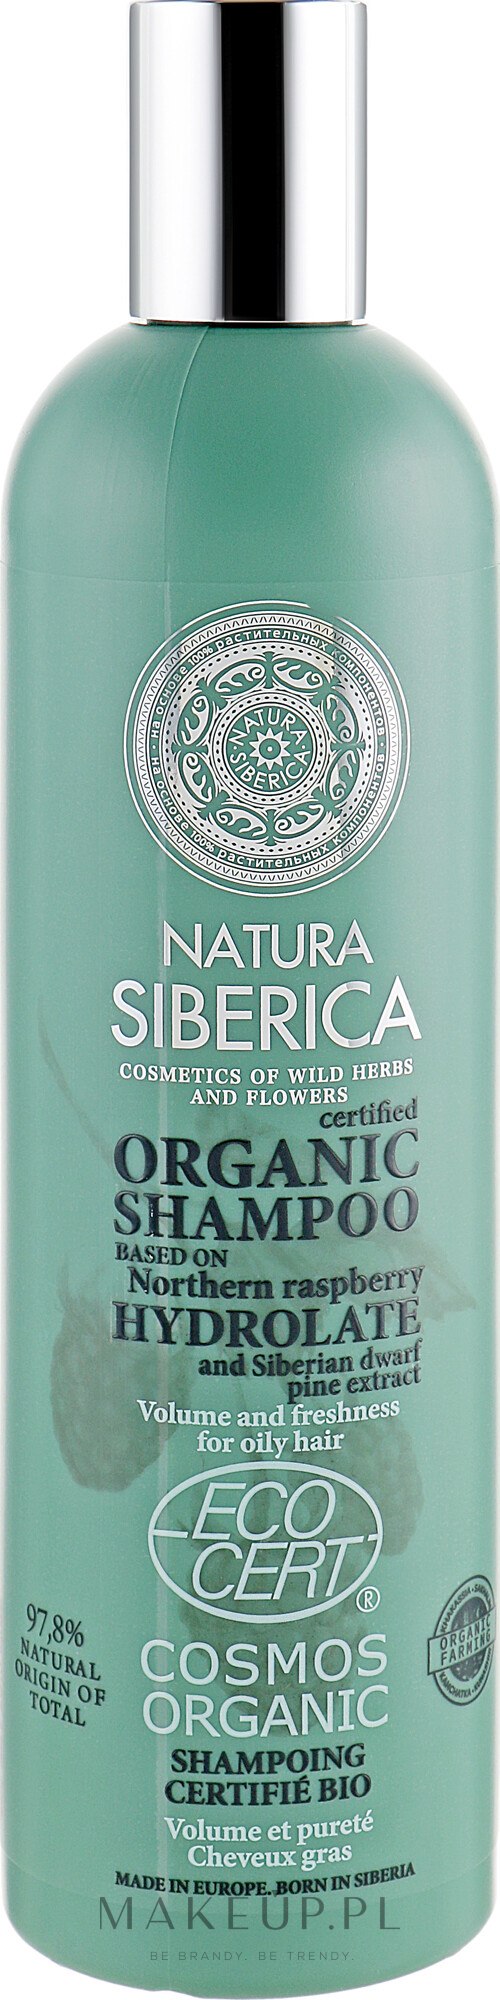 natura siberic szampon wizaz